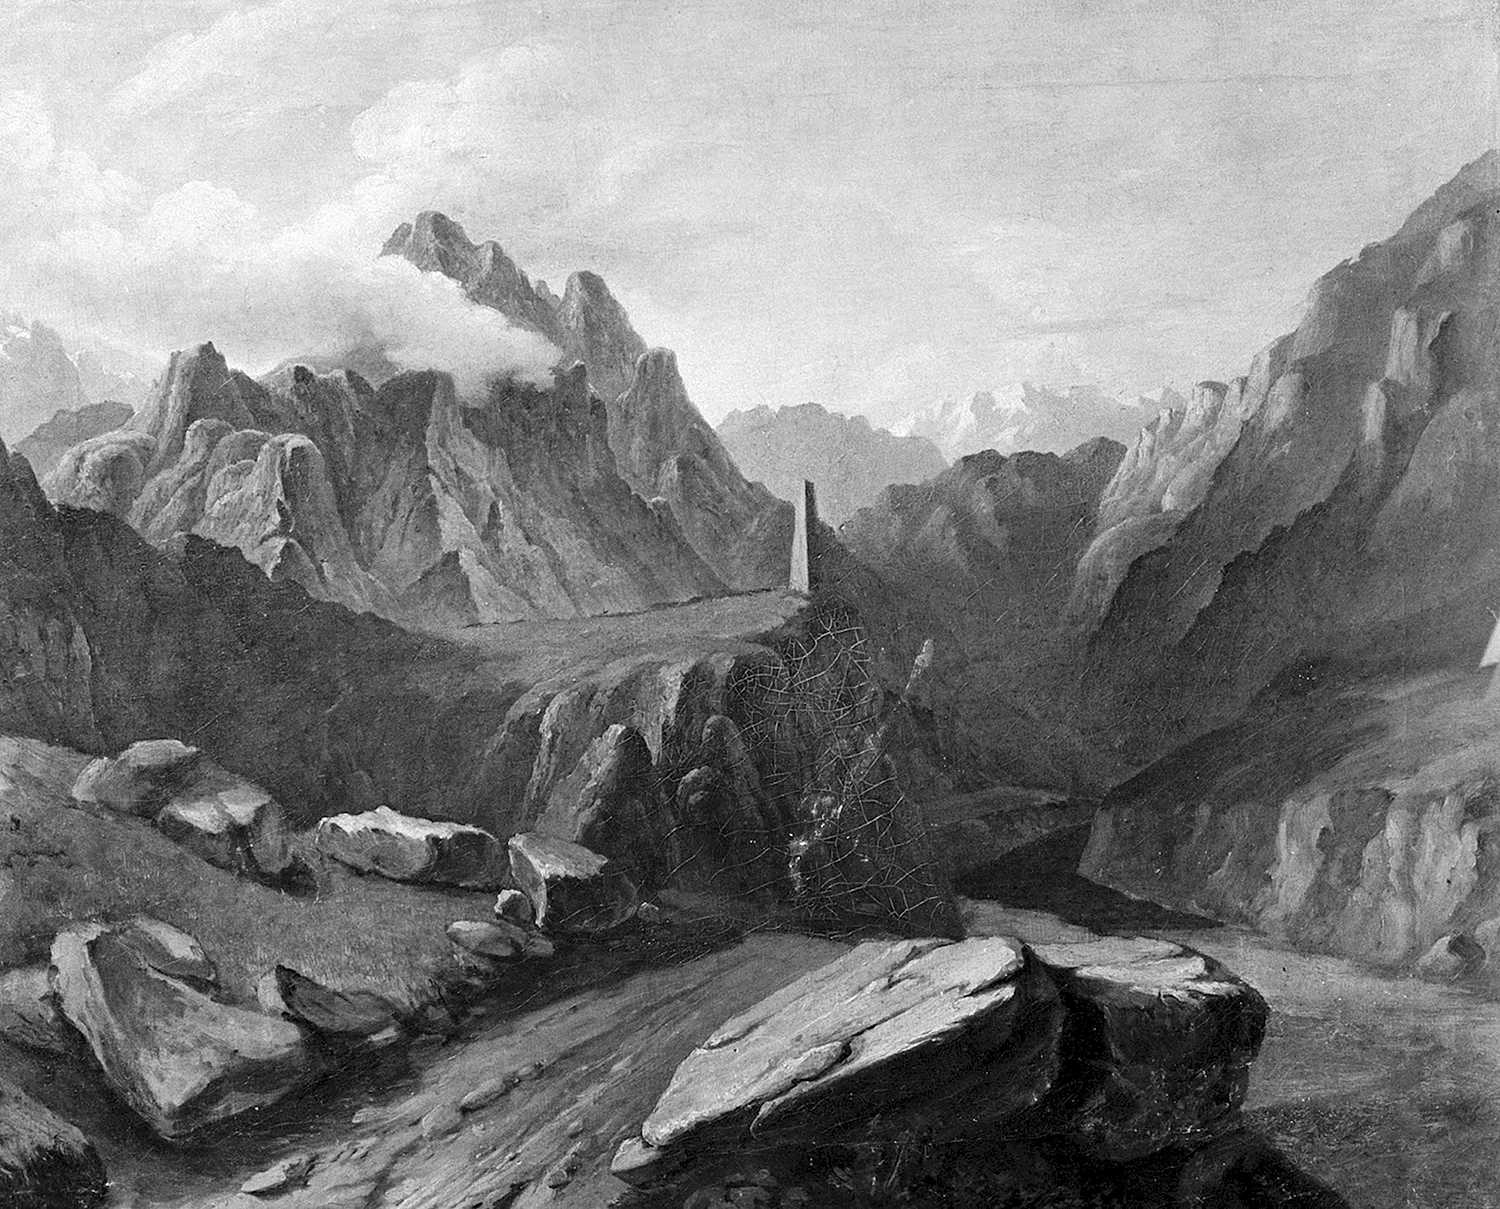 Картины Лермонтова о Кавказе